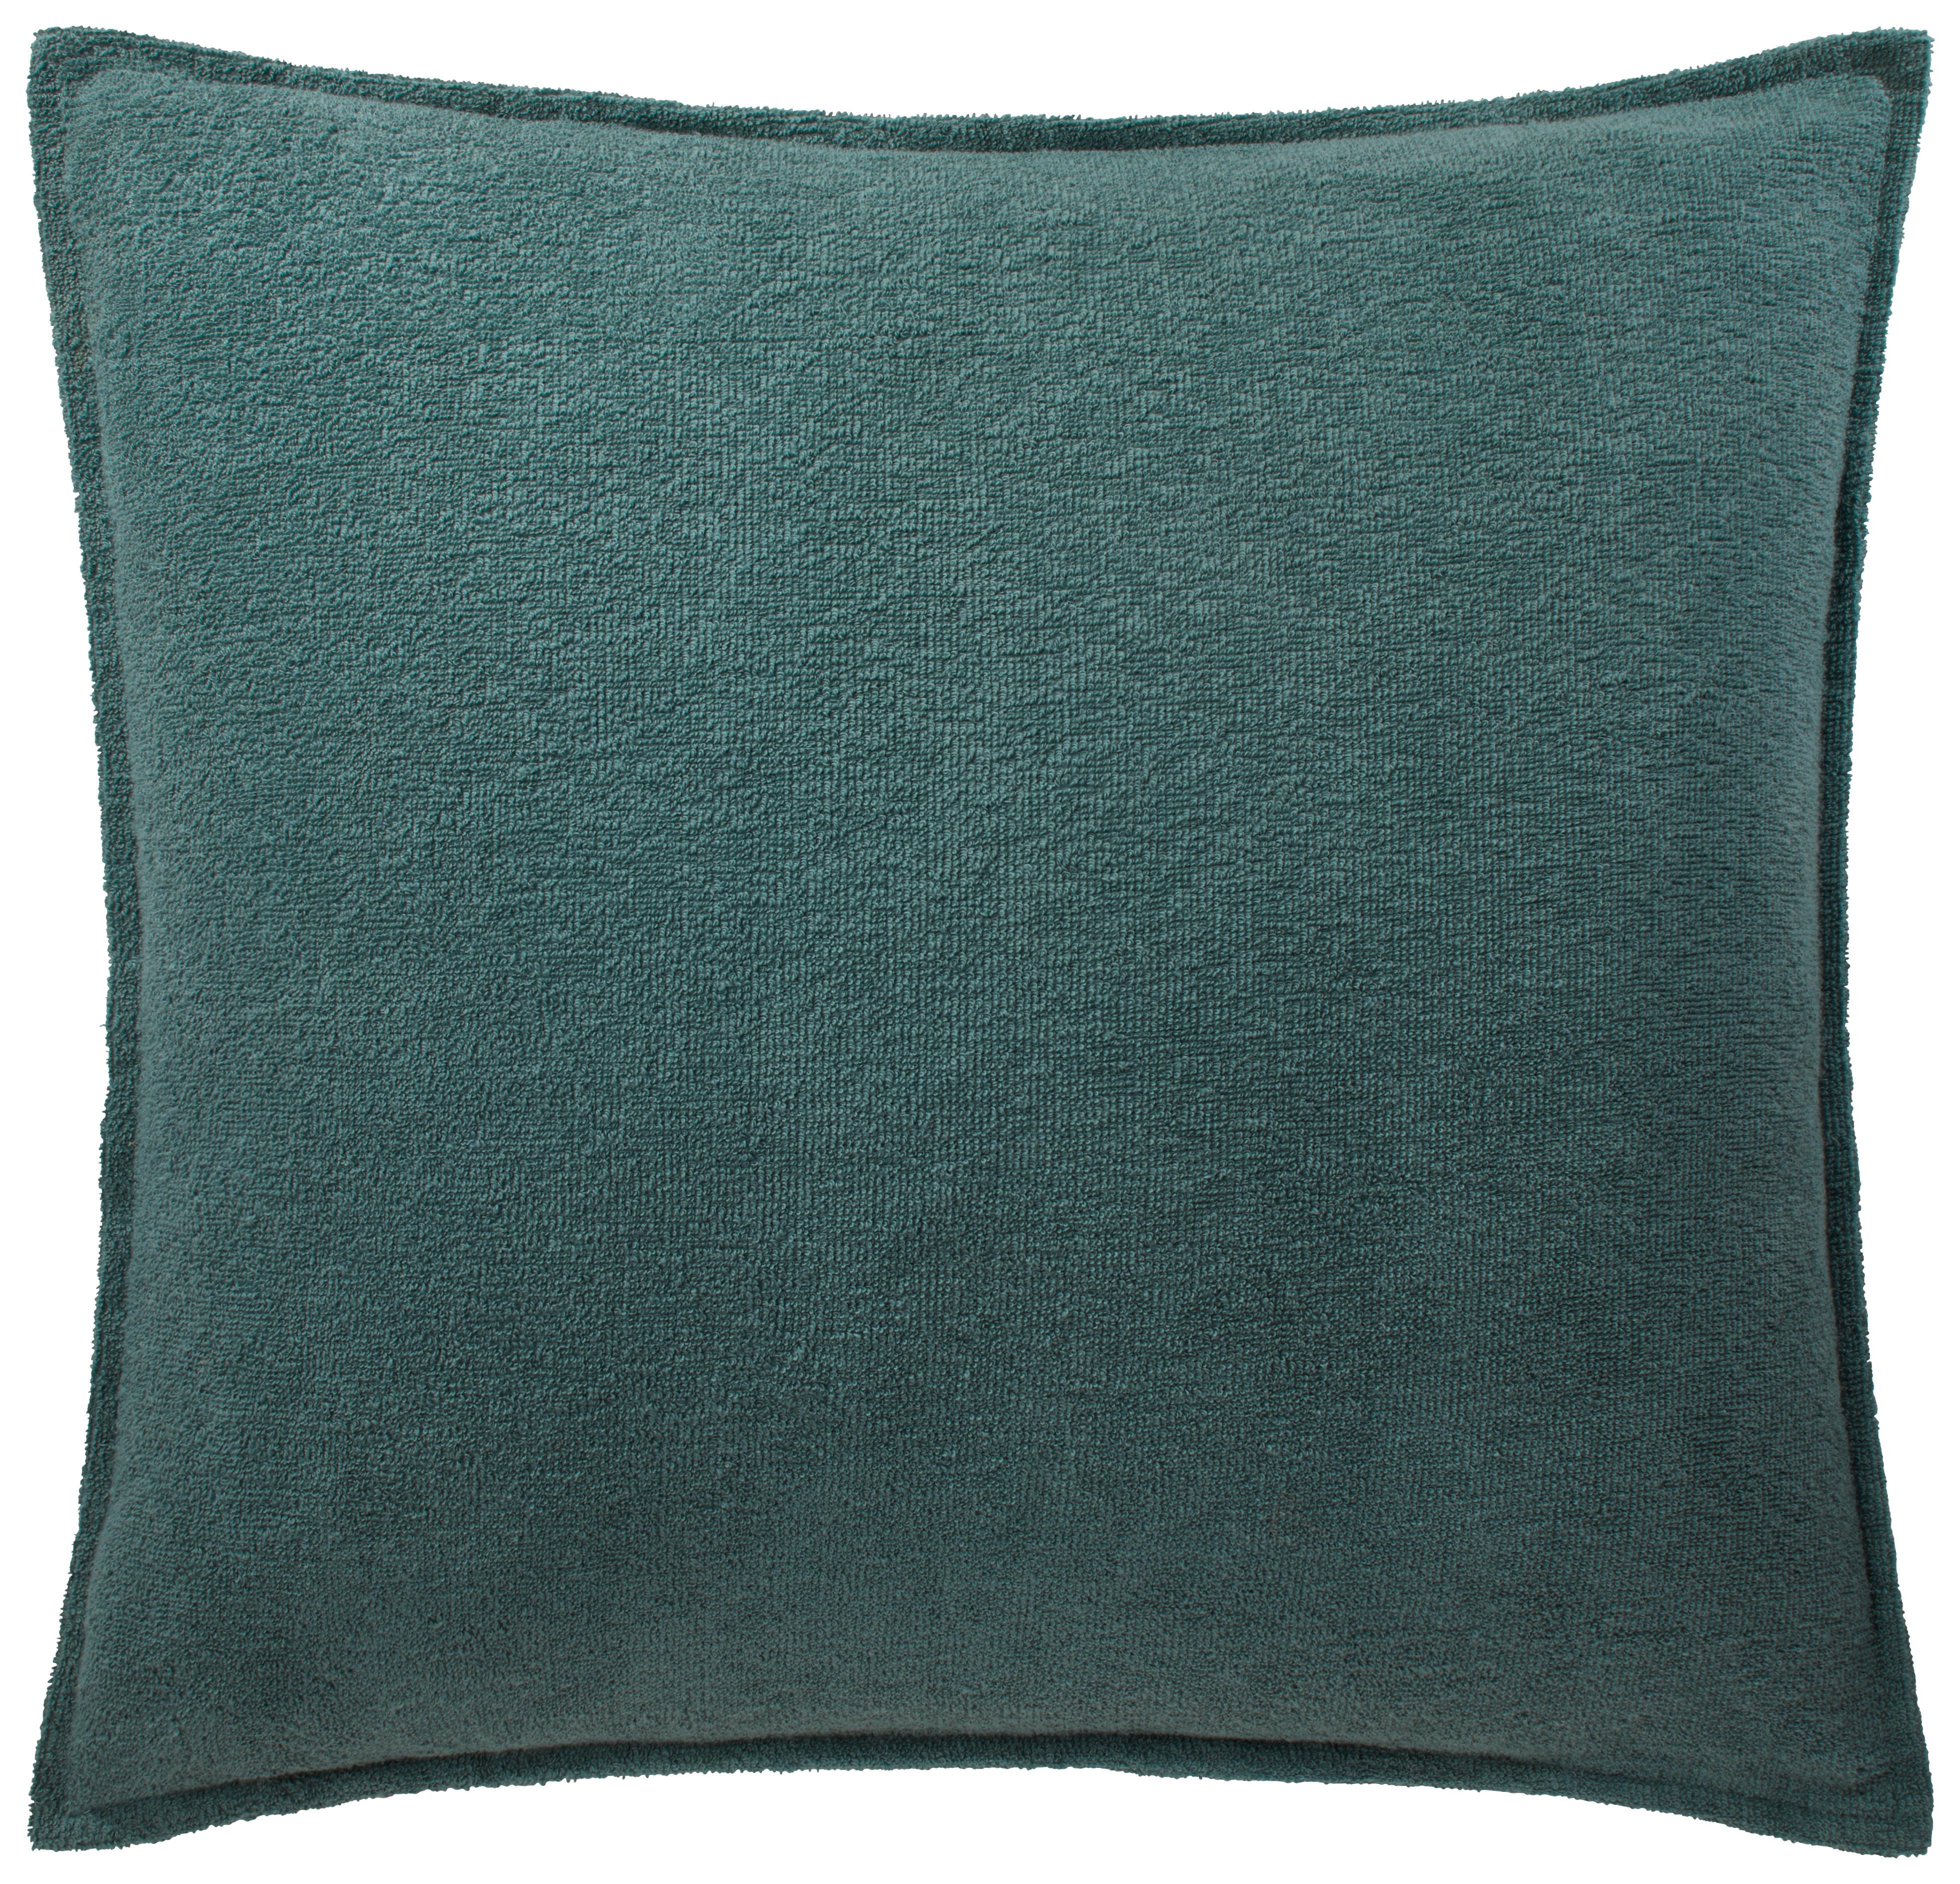 Zierkissen Lotte in Blau ca. 45x45cm - Blau, KONVENTIONELL, Textil (45/45cm) - Modern Living